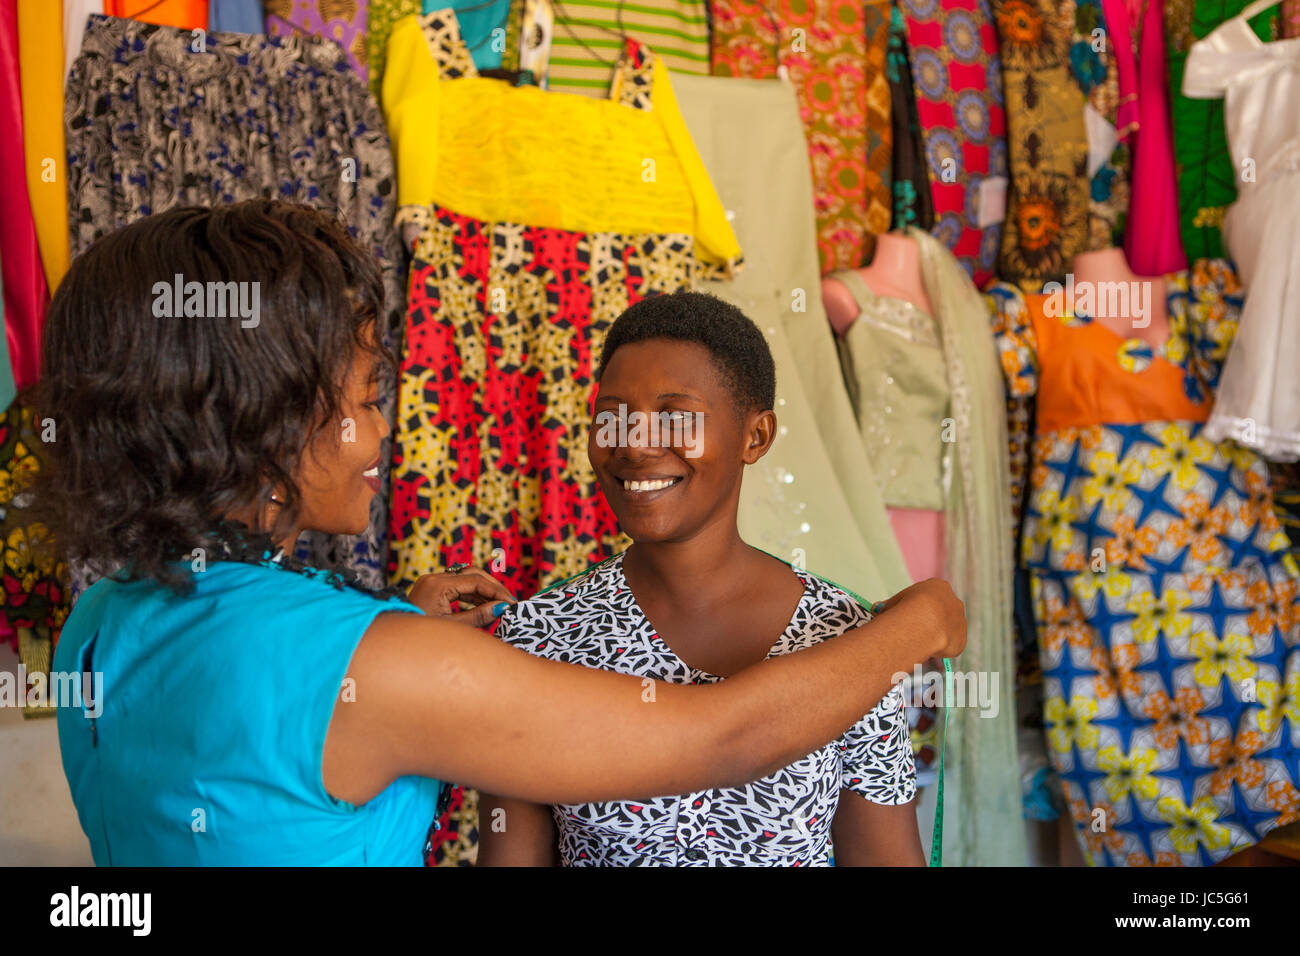 Une petite entreprise sur mesure femelle mesure d'un client, la Tanzanie, l'Afrique. Banque D'Images